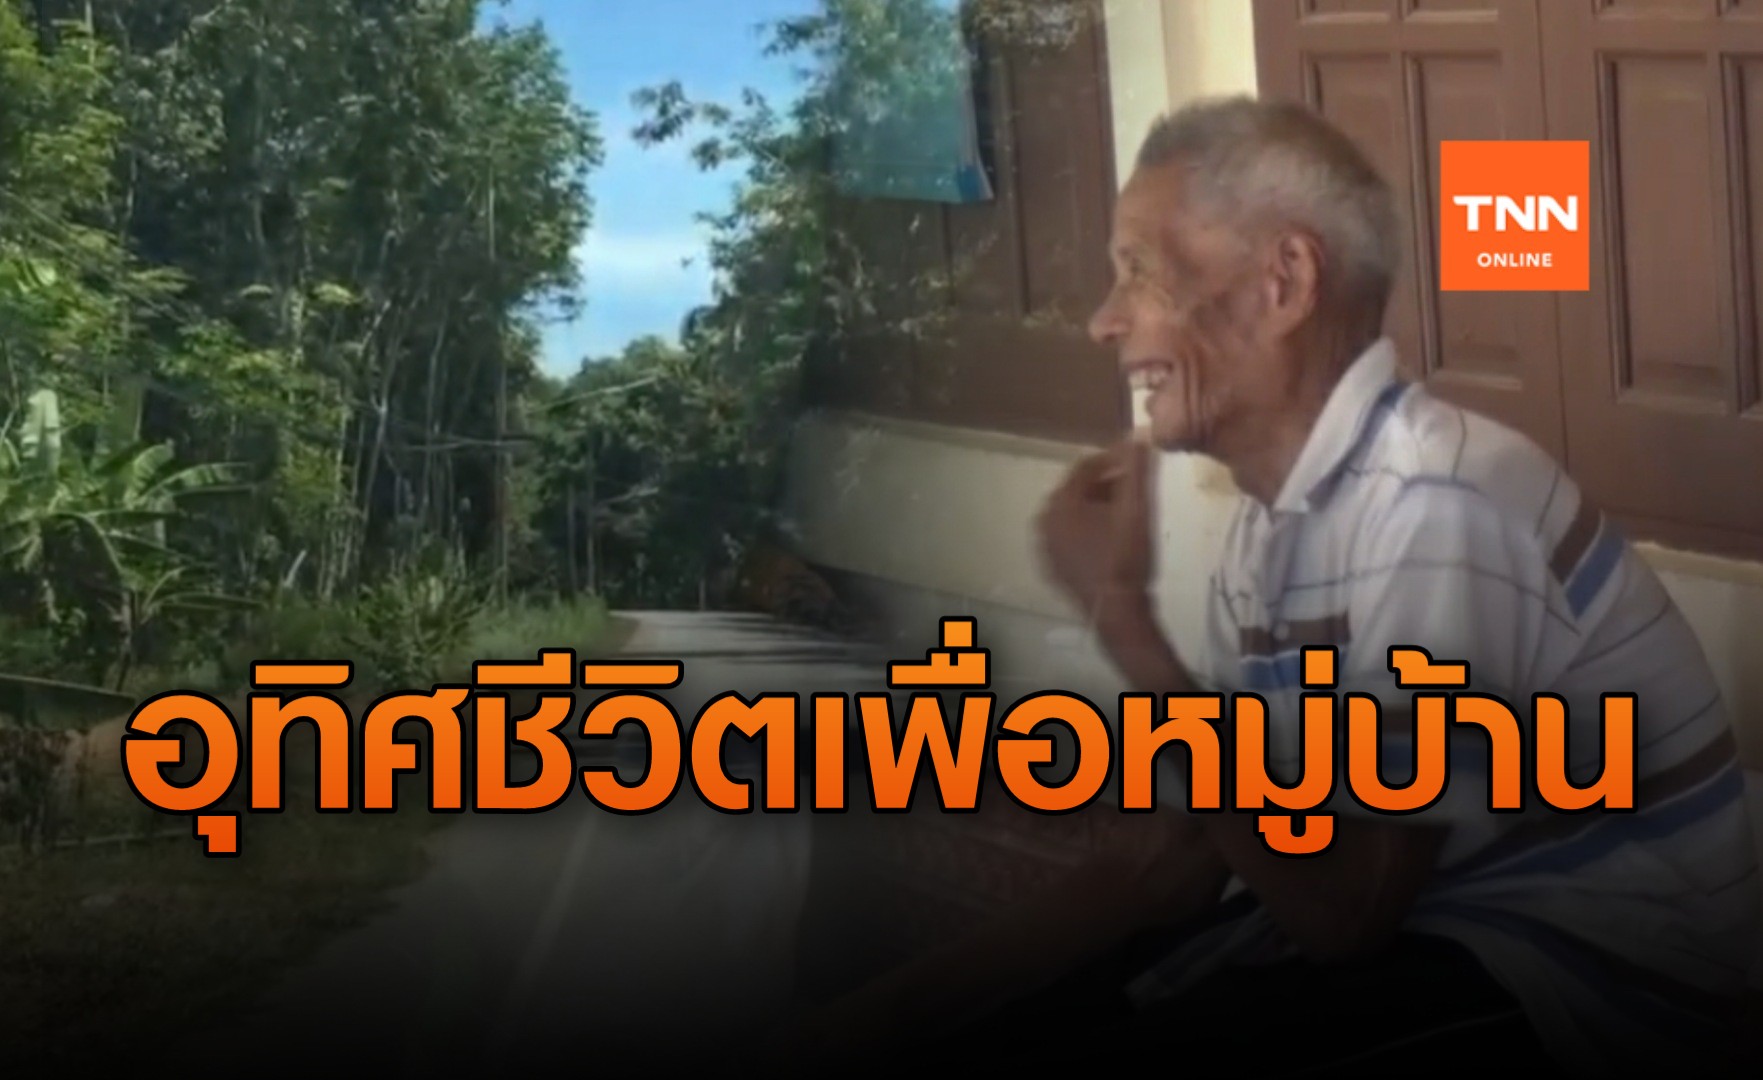 น่าชื่นชม! พ่อเฒ่าวัย 88 ปี พัฒนาถนนและปลูกต้นไม้ในหมู่บ้านโดยความสมัครใจ